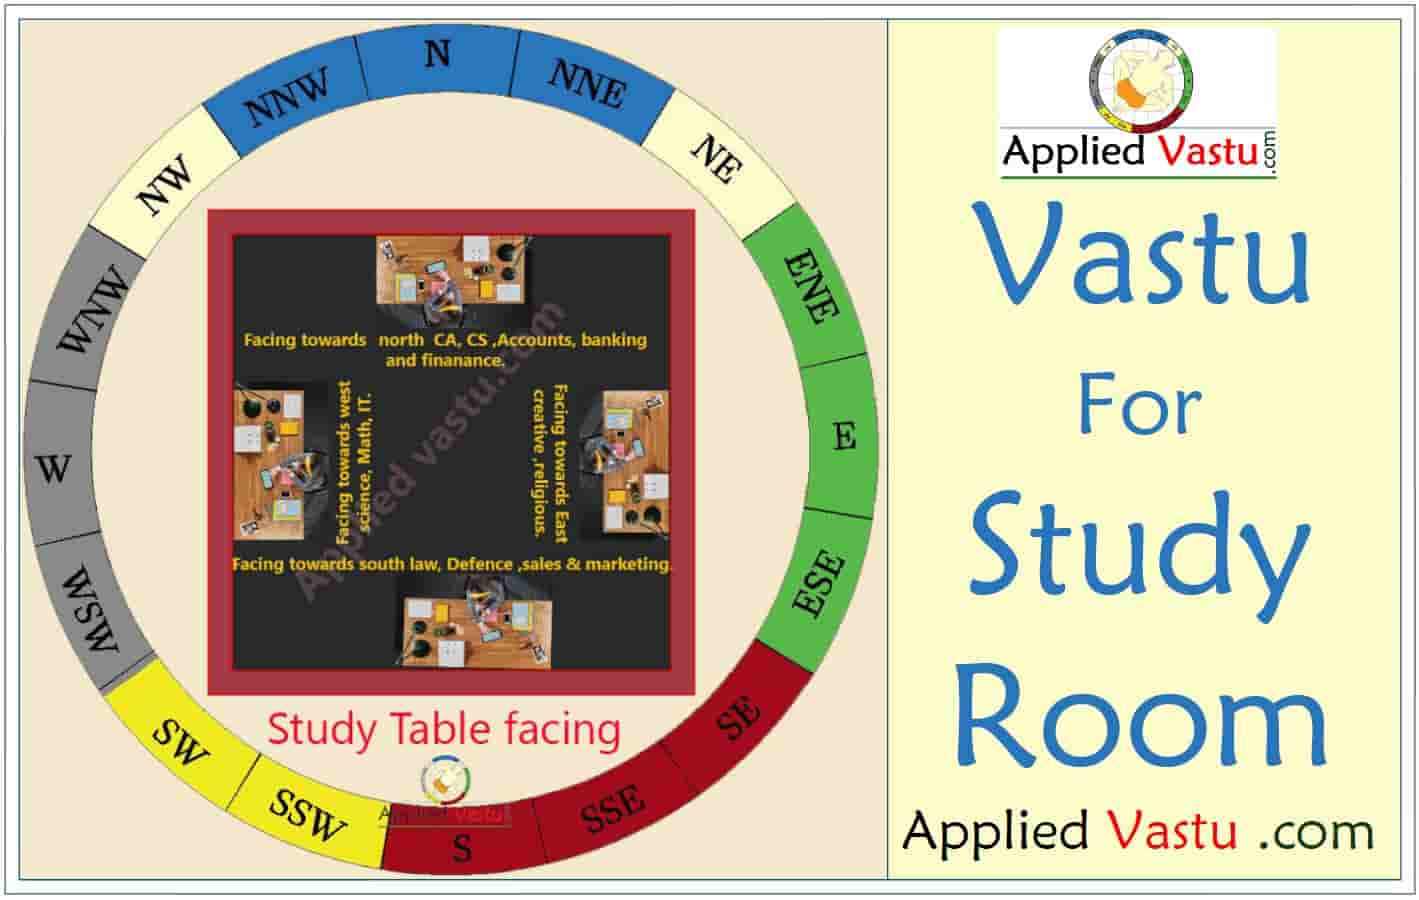 Vastu For Study Room- Vastu Tips for Study Room- Study room vastu - Vastu Shastra for Study room - Vastu direction for study room - Vastu Color for Study room